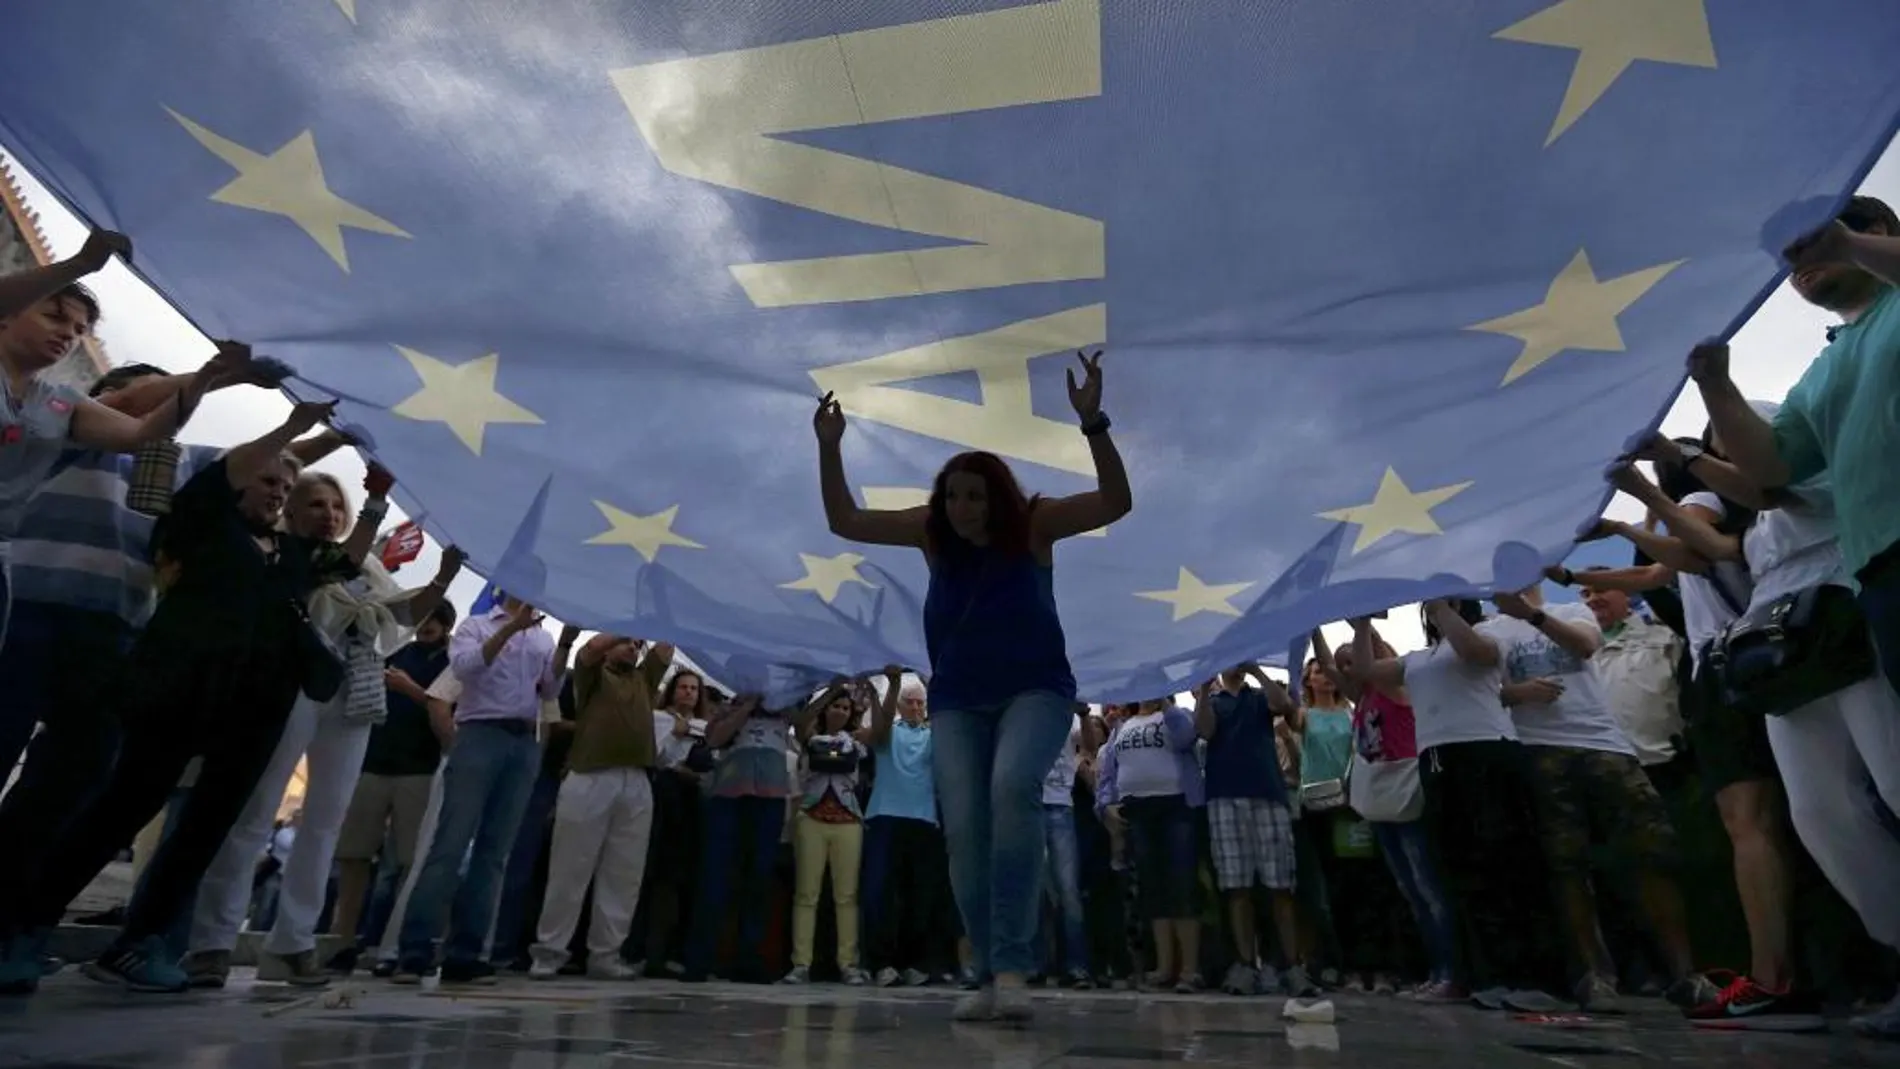 Bajo en lema "Vivimos en Europa", los manifestantes hicieron un llamamiento al Gobierno para que garantice la permanencia de Grecia en el euro